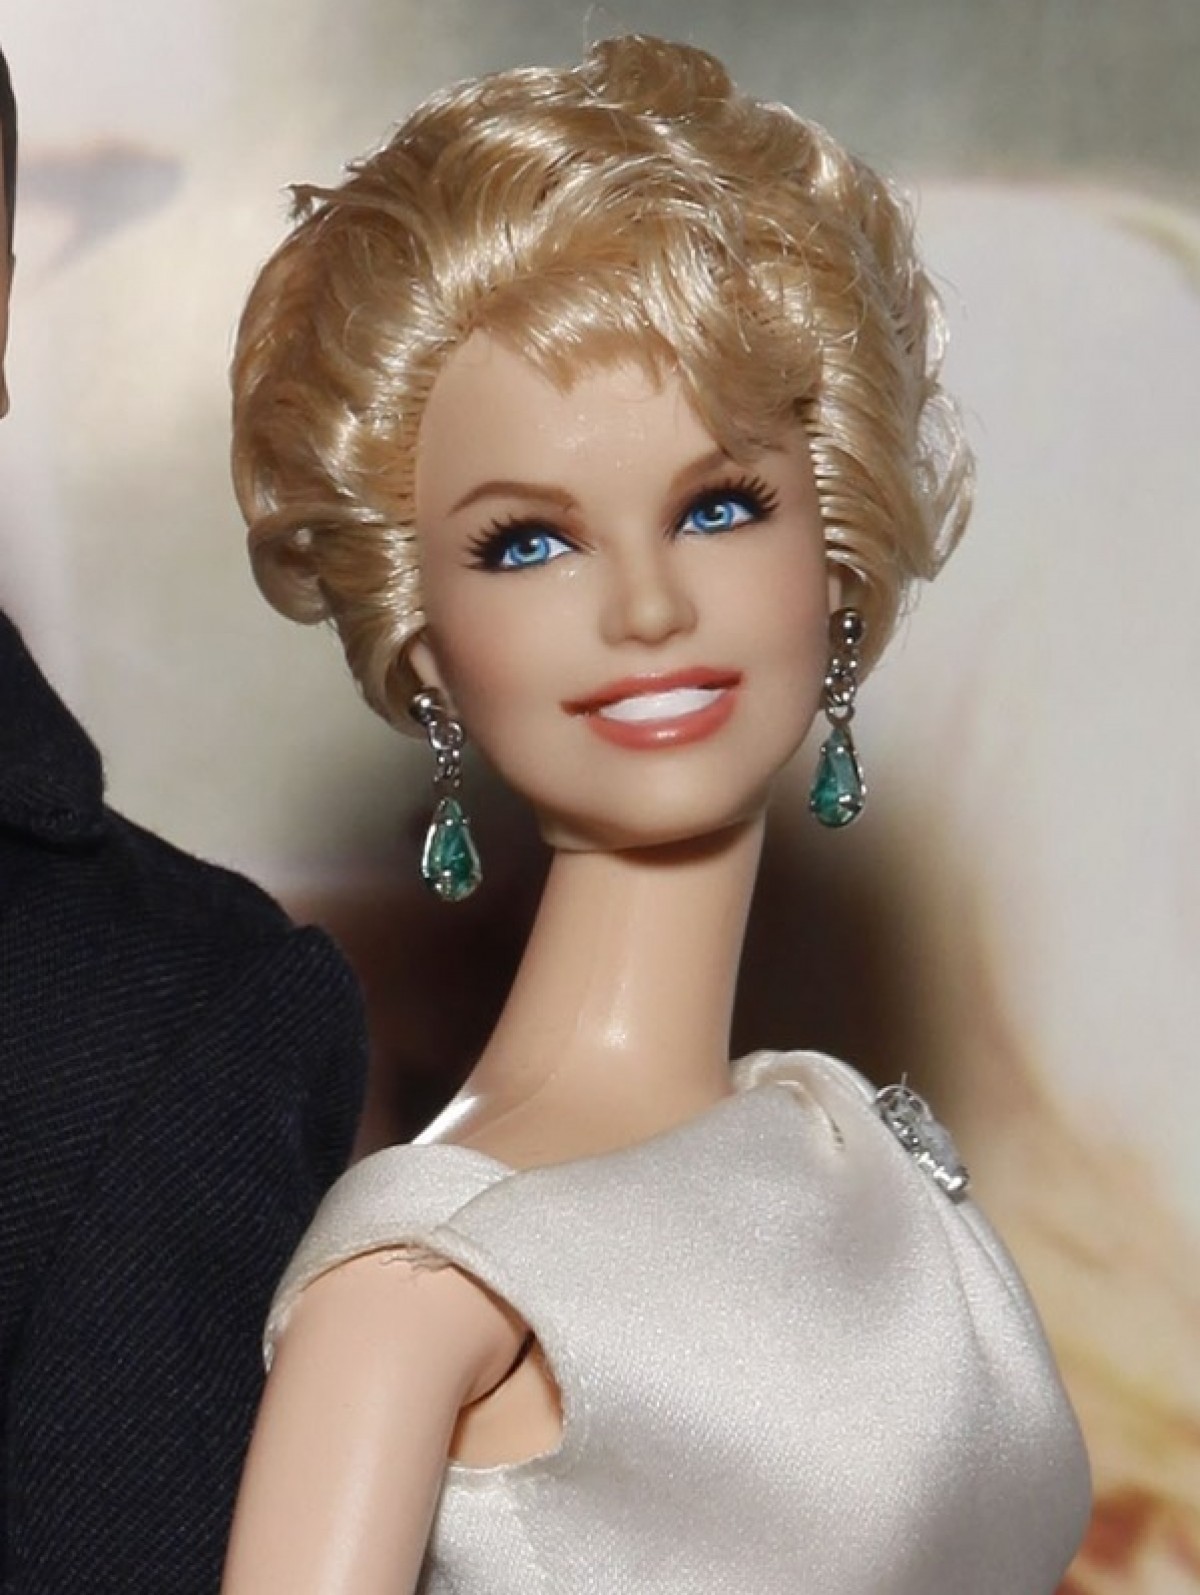 「バービー人形になりたくて」米女性が催眠療法を使い“完璧な人形”を目指す